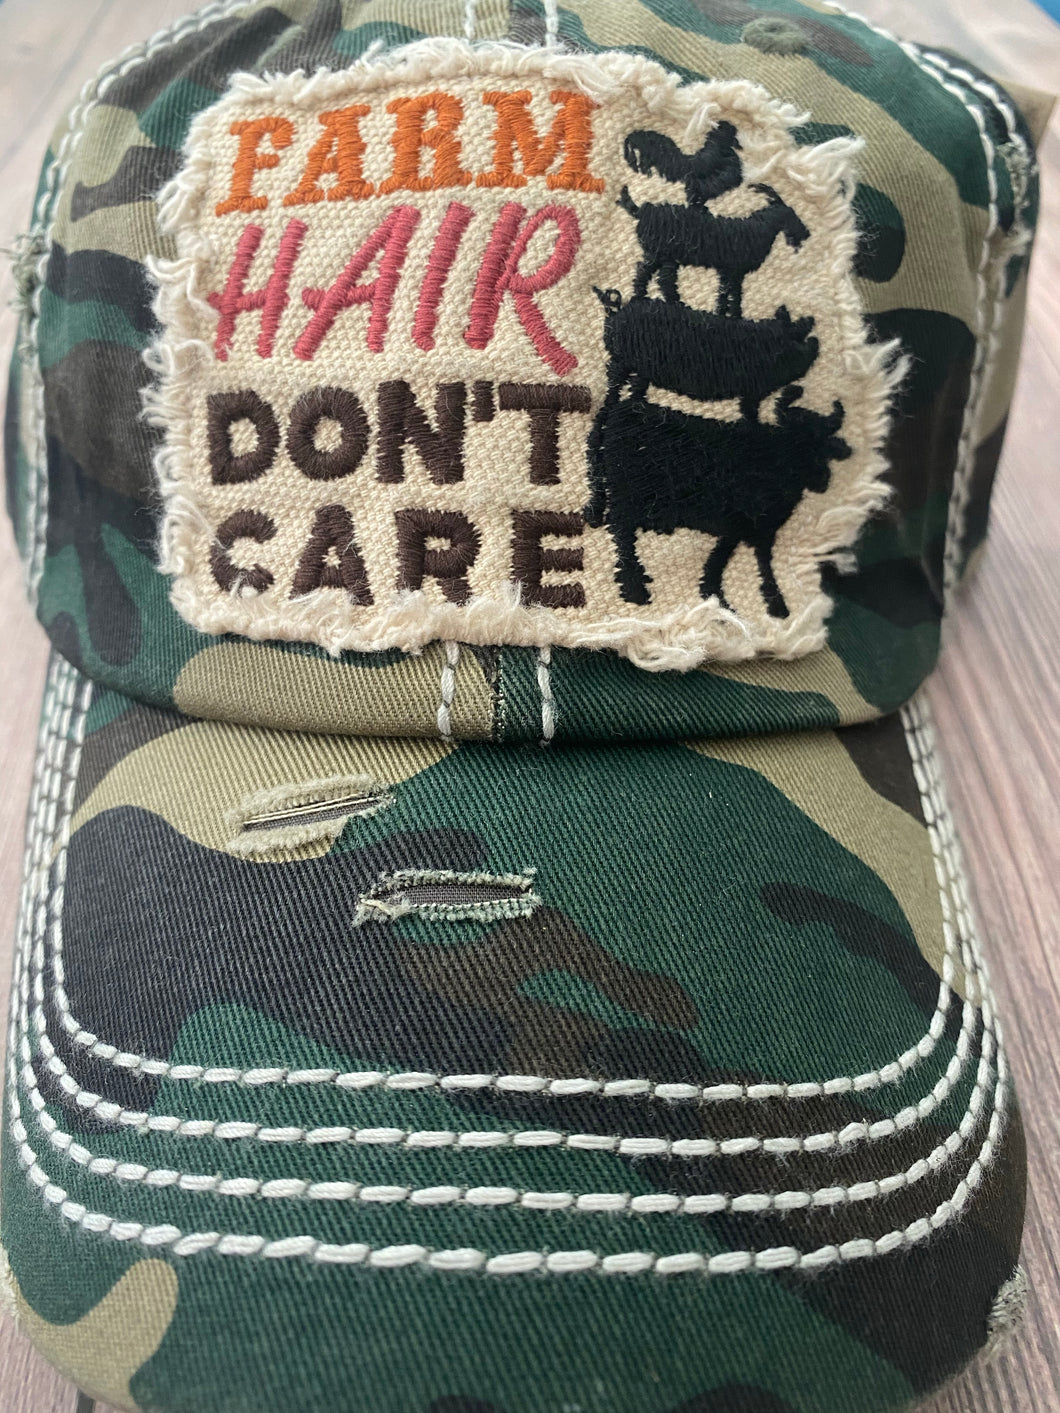 Farm Hair don’t care